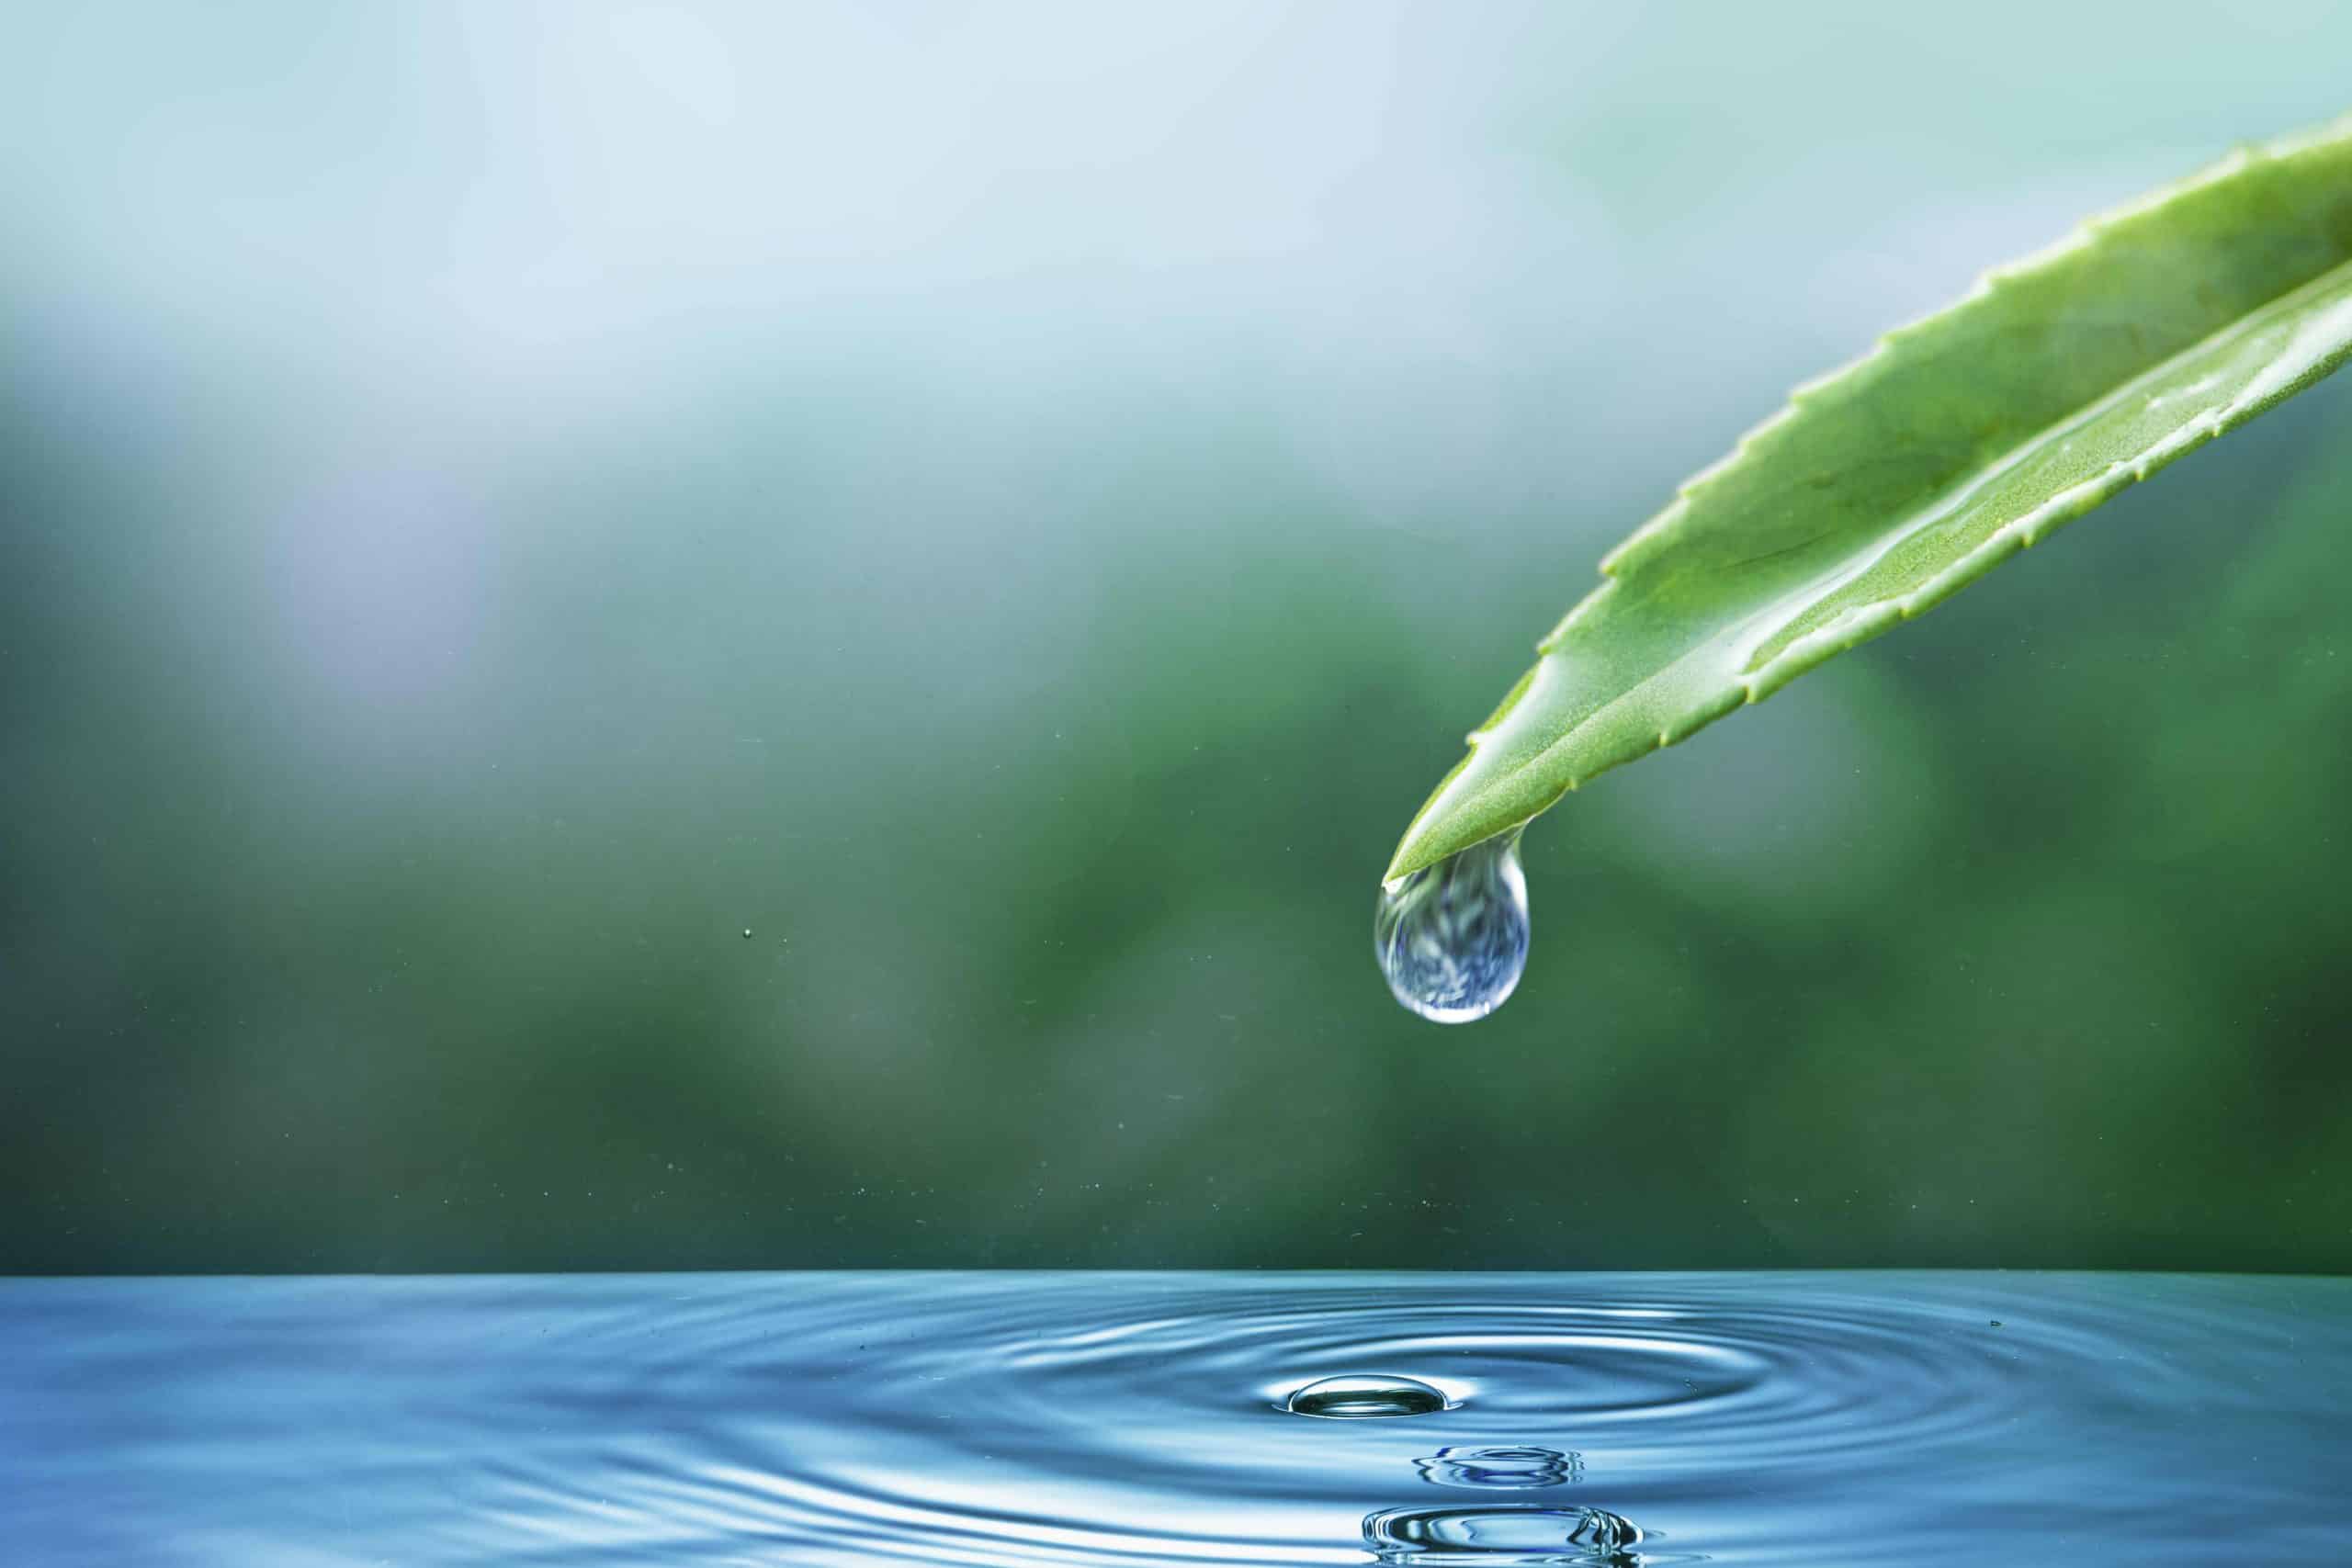 Saf Suyu İçme Suyuna Dönüştürme Yöntemleri Güvenli ve Sürdürülebilir Çözümler